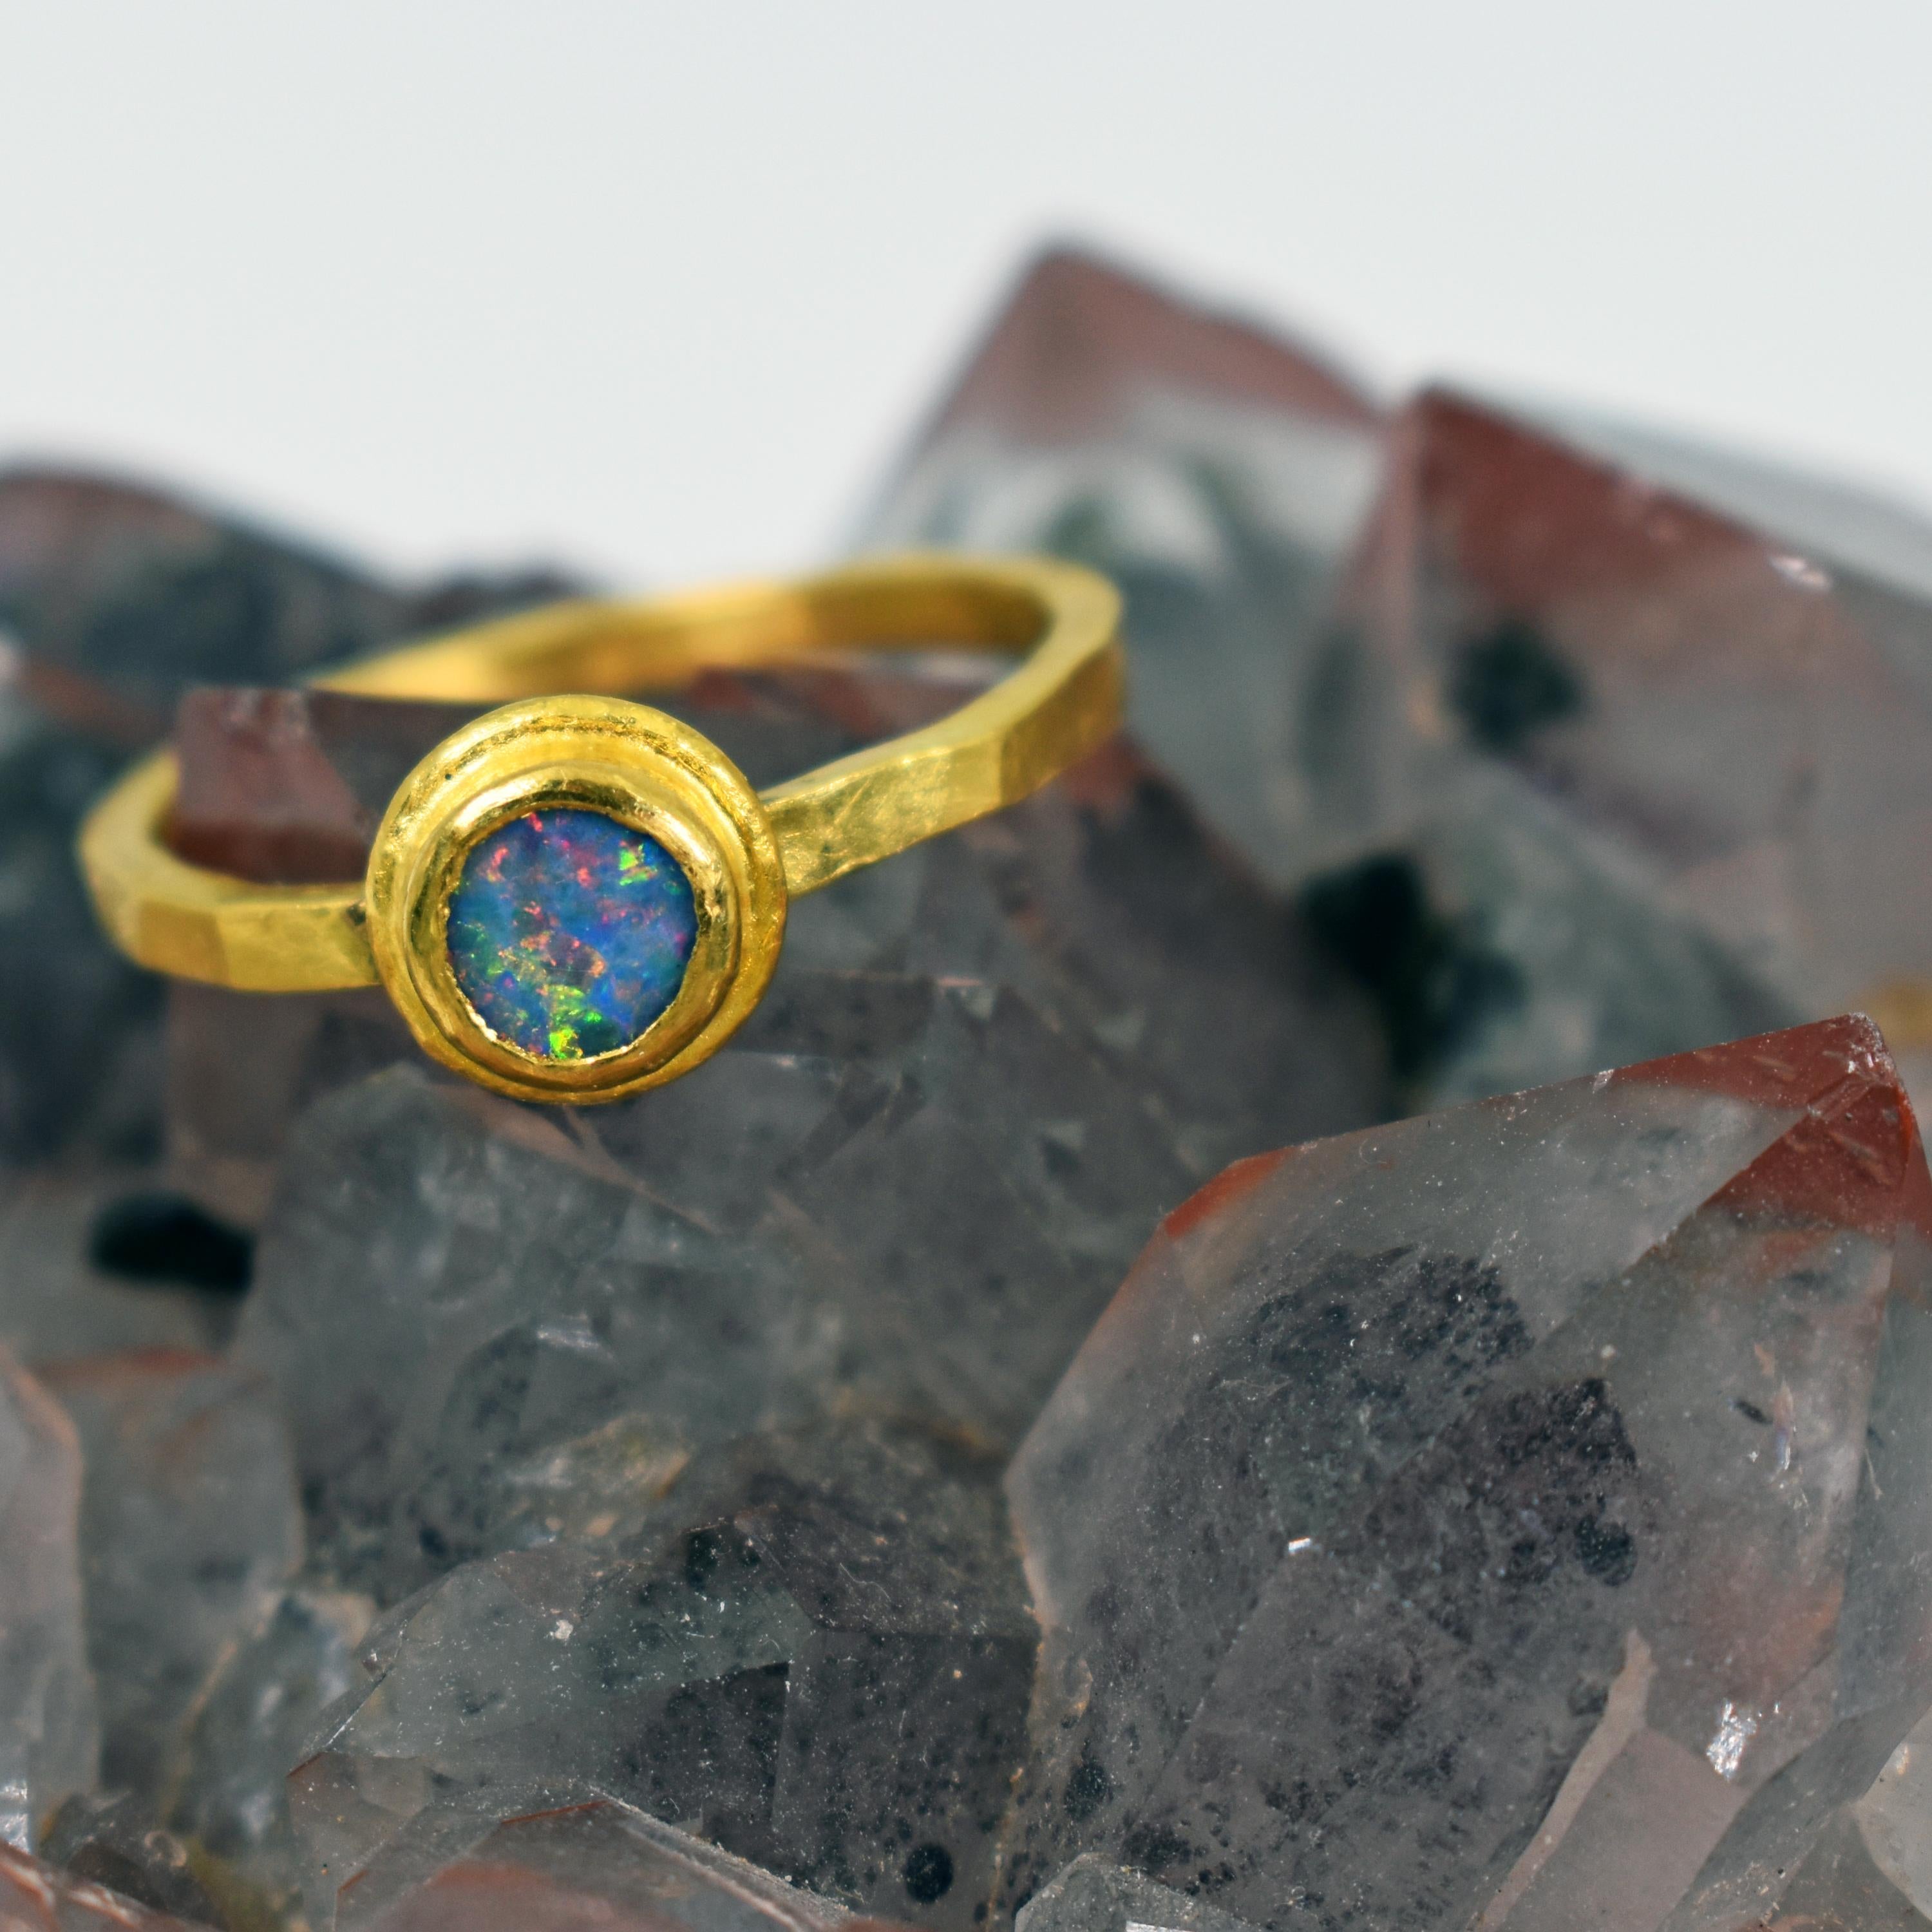 Blauer Opal und 22k Gelbgold Lünette stapelbar Kunsthandwerker Ring. Der Ring hat die Größe 6,5 und ist mit einer gehämmerten, satinierten Oberfläche versehen. Zeitgemäßer, aber dennoch rustikaler und zarter, minimaler Ring mit einem wunderschönen,